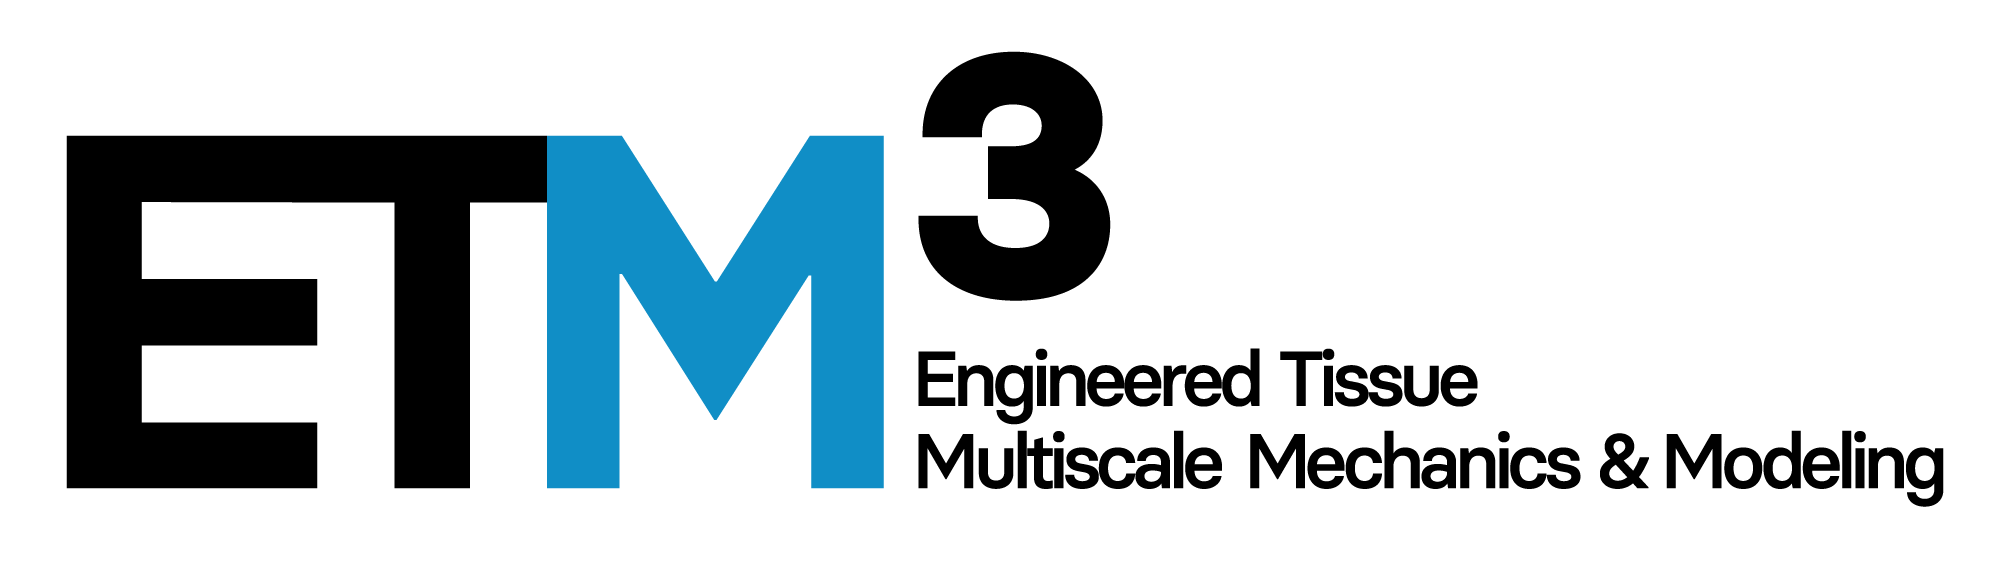 ETM3 logo